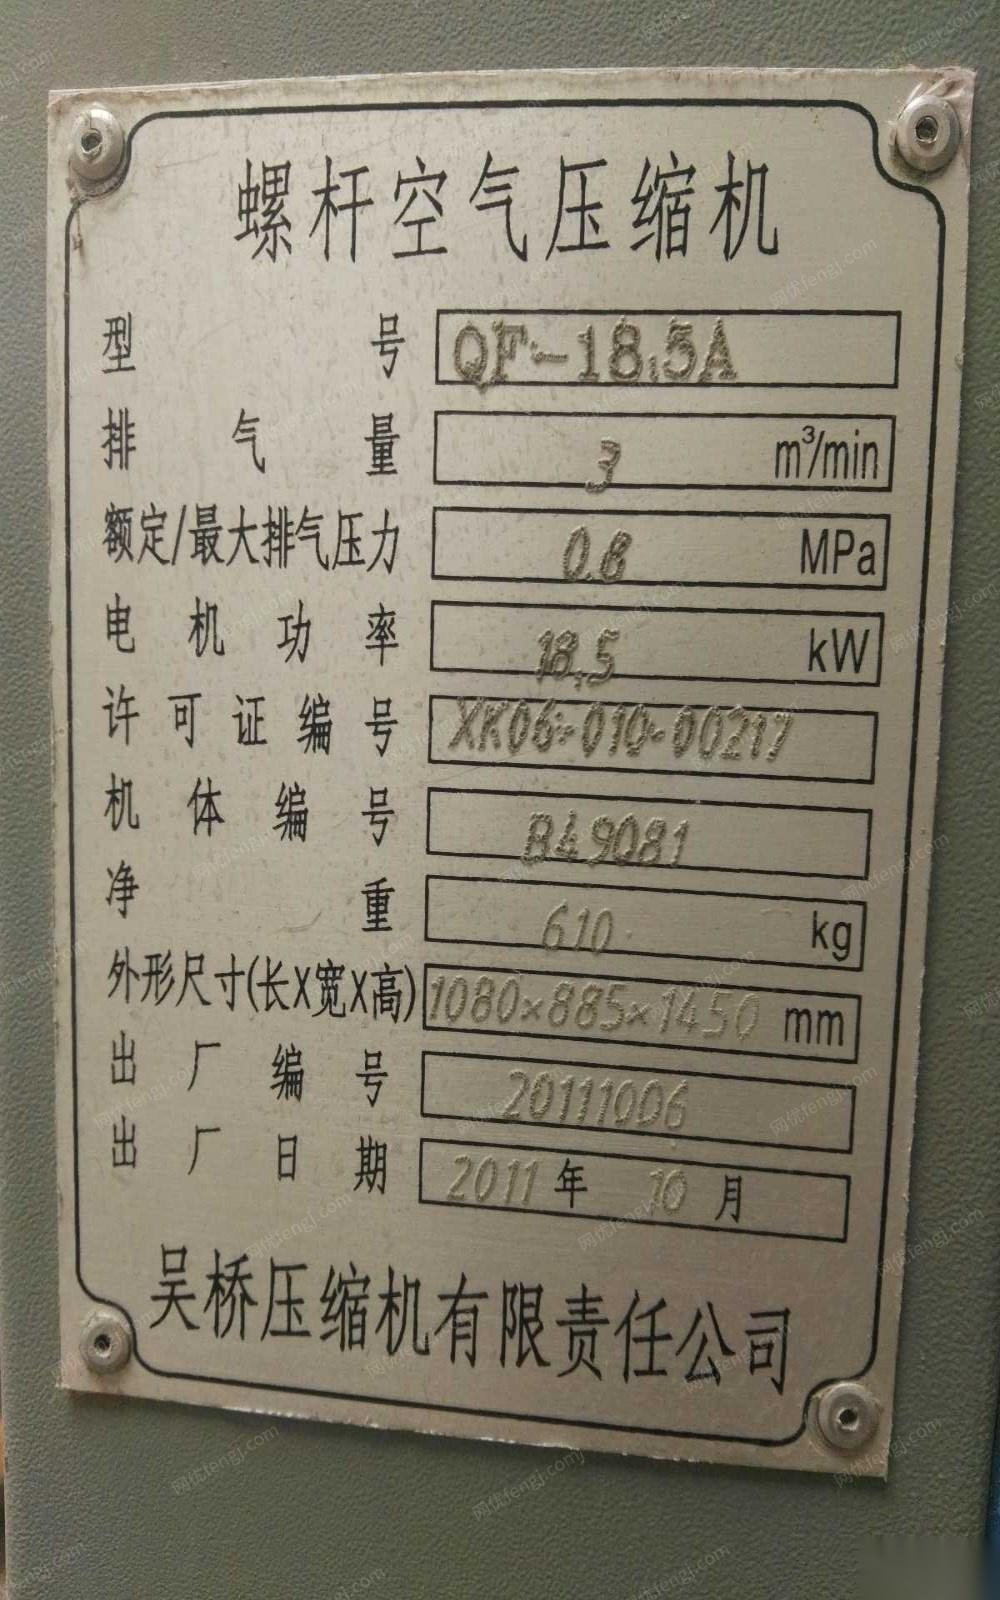 内蒙古包头螺杆空气压缩机出售 12000元